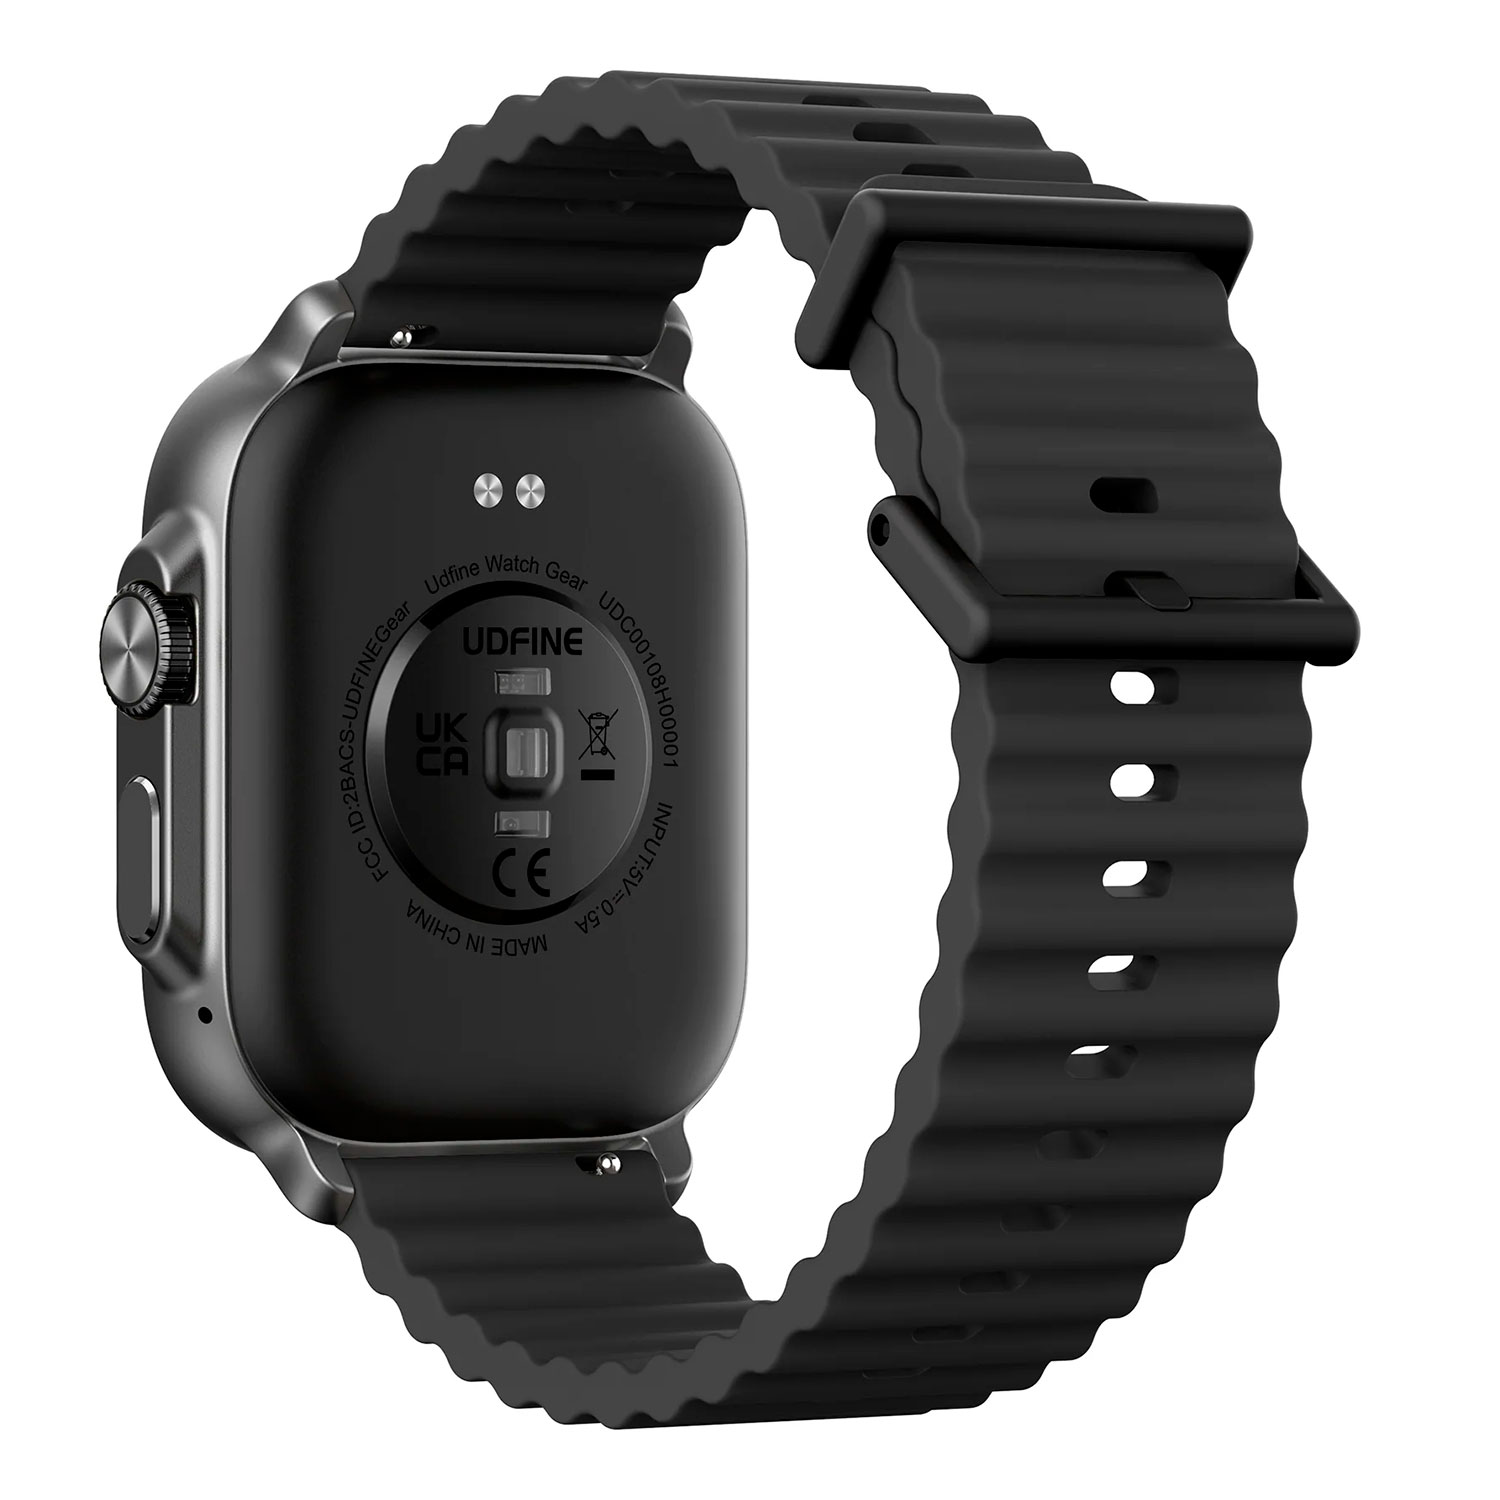 Smartwatch Udfine Watch Gear Alexa - Preto